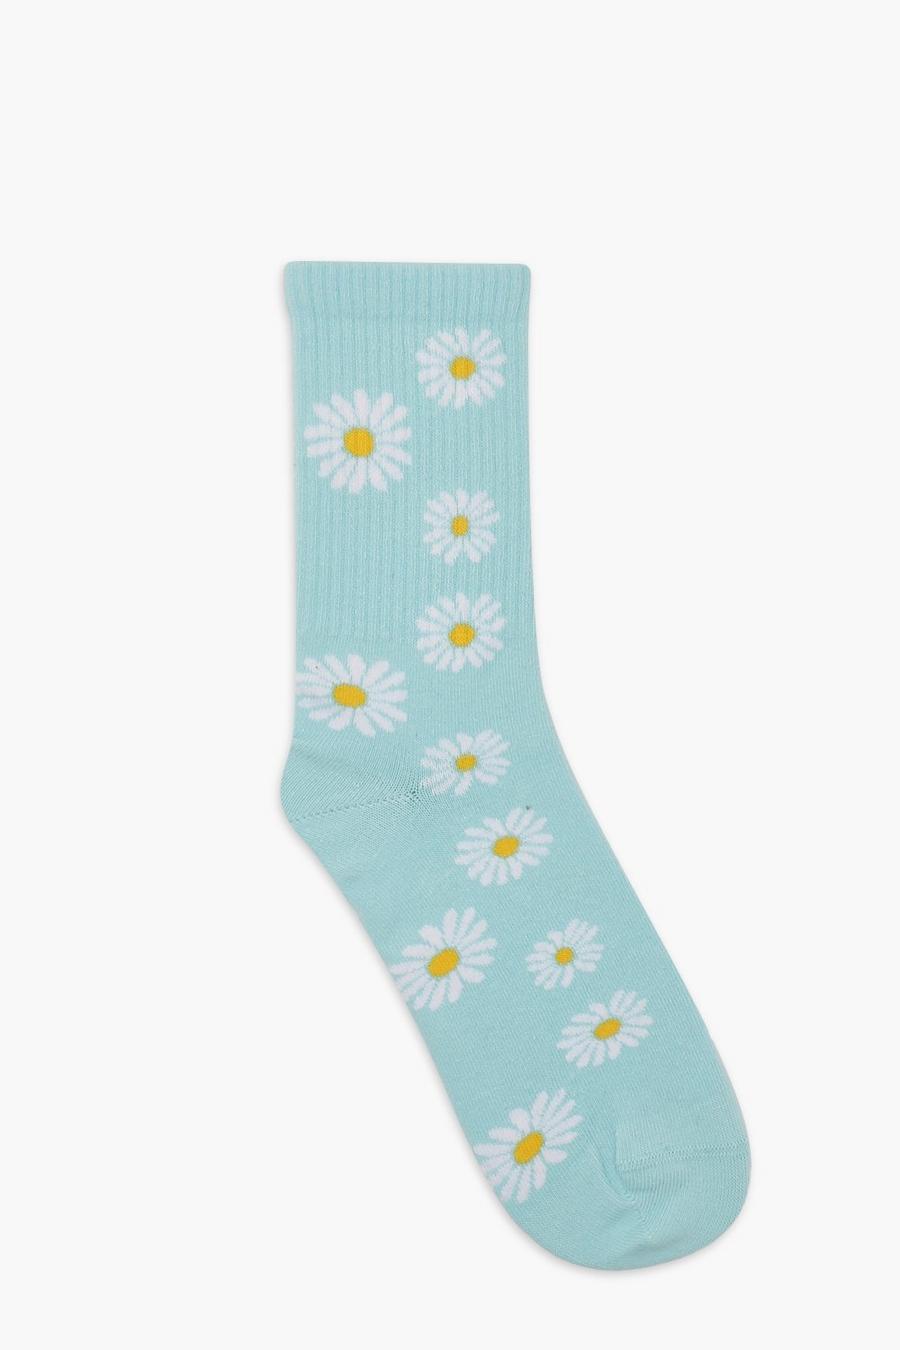 Jacquard Socken mit Gänseblümchen-Print, Blue bleu